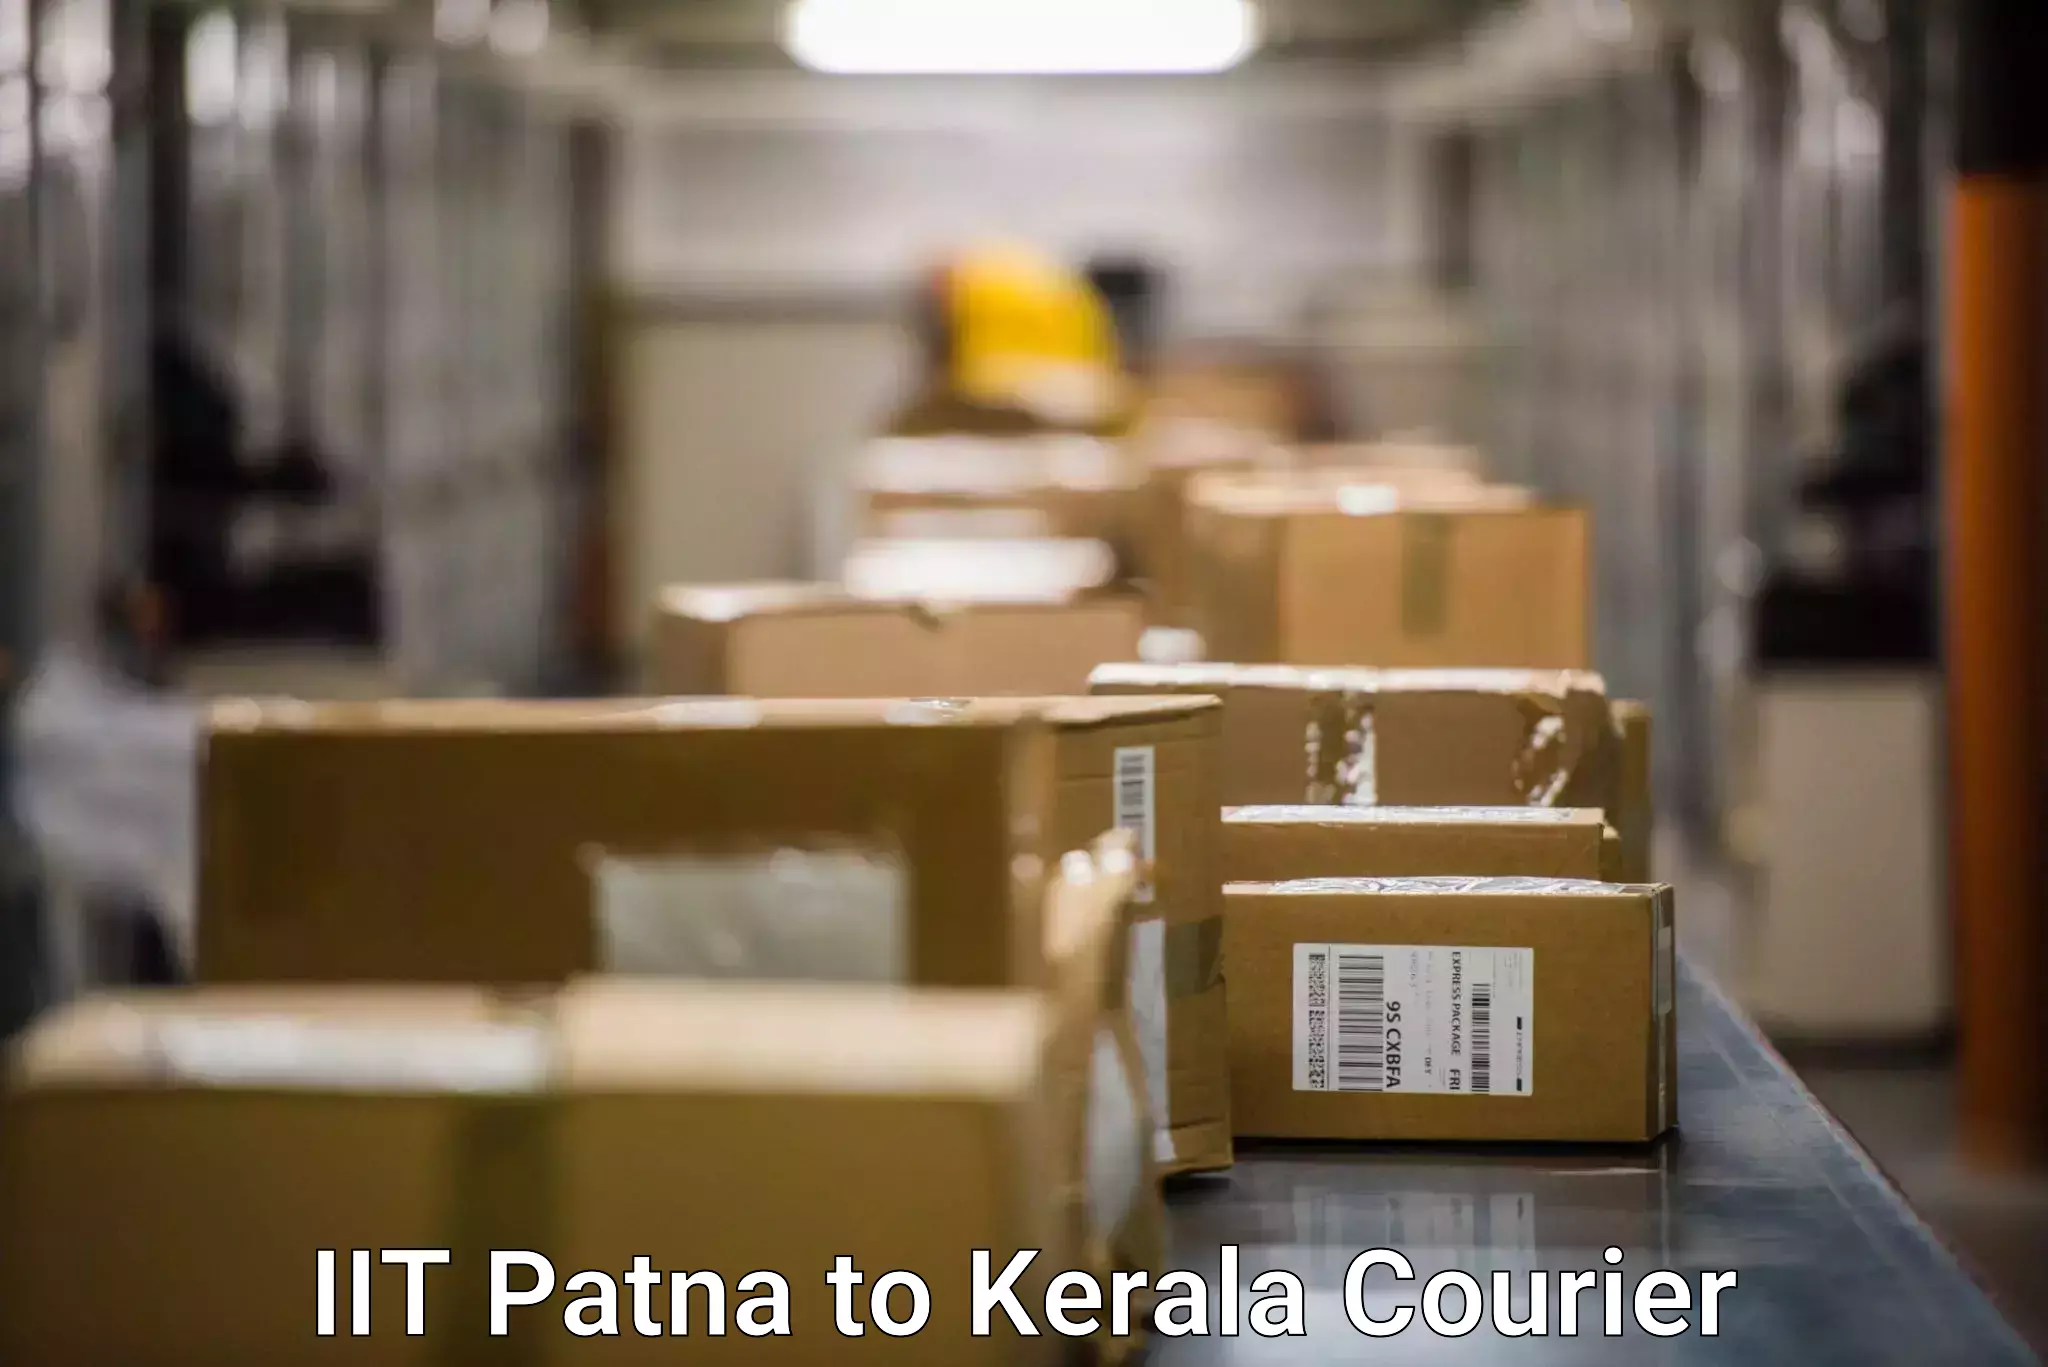 Smart logistics solutions in IIT Patna to Mundakayam